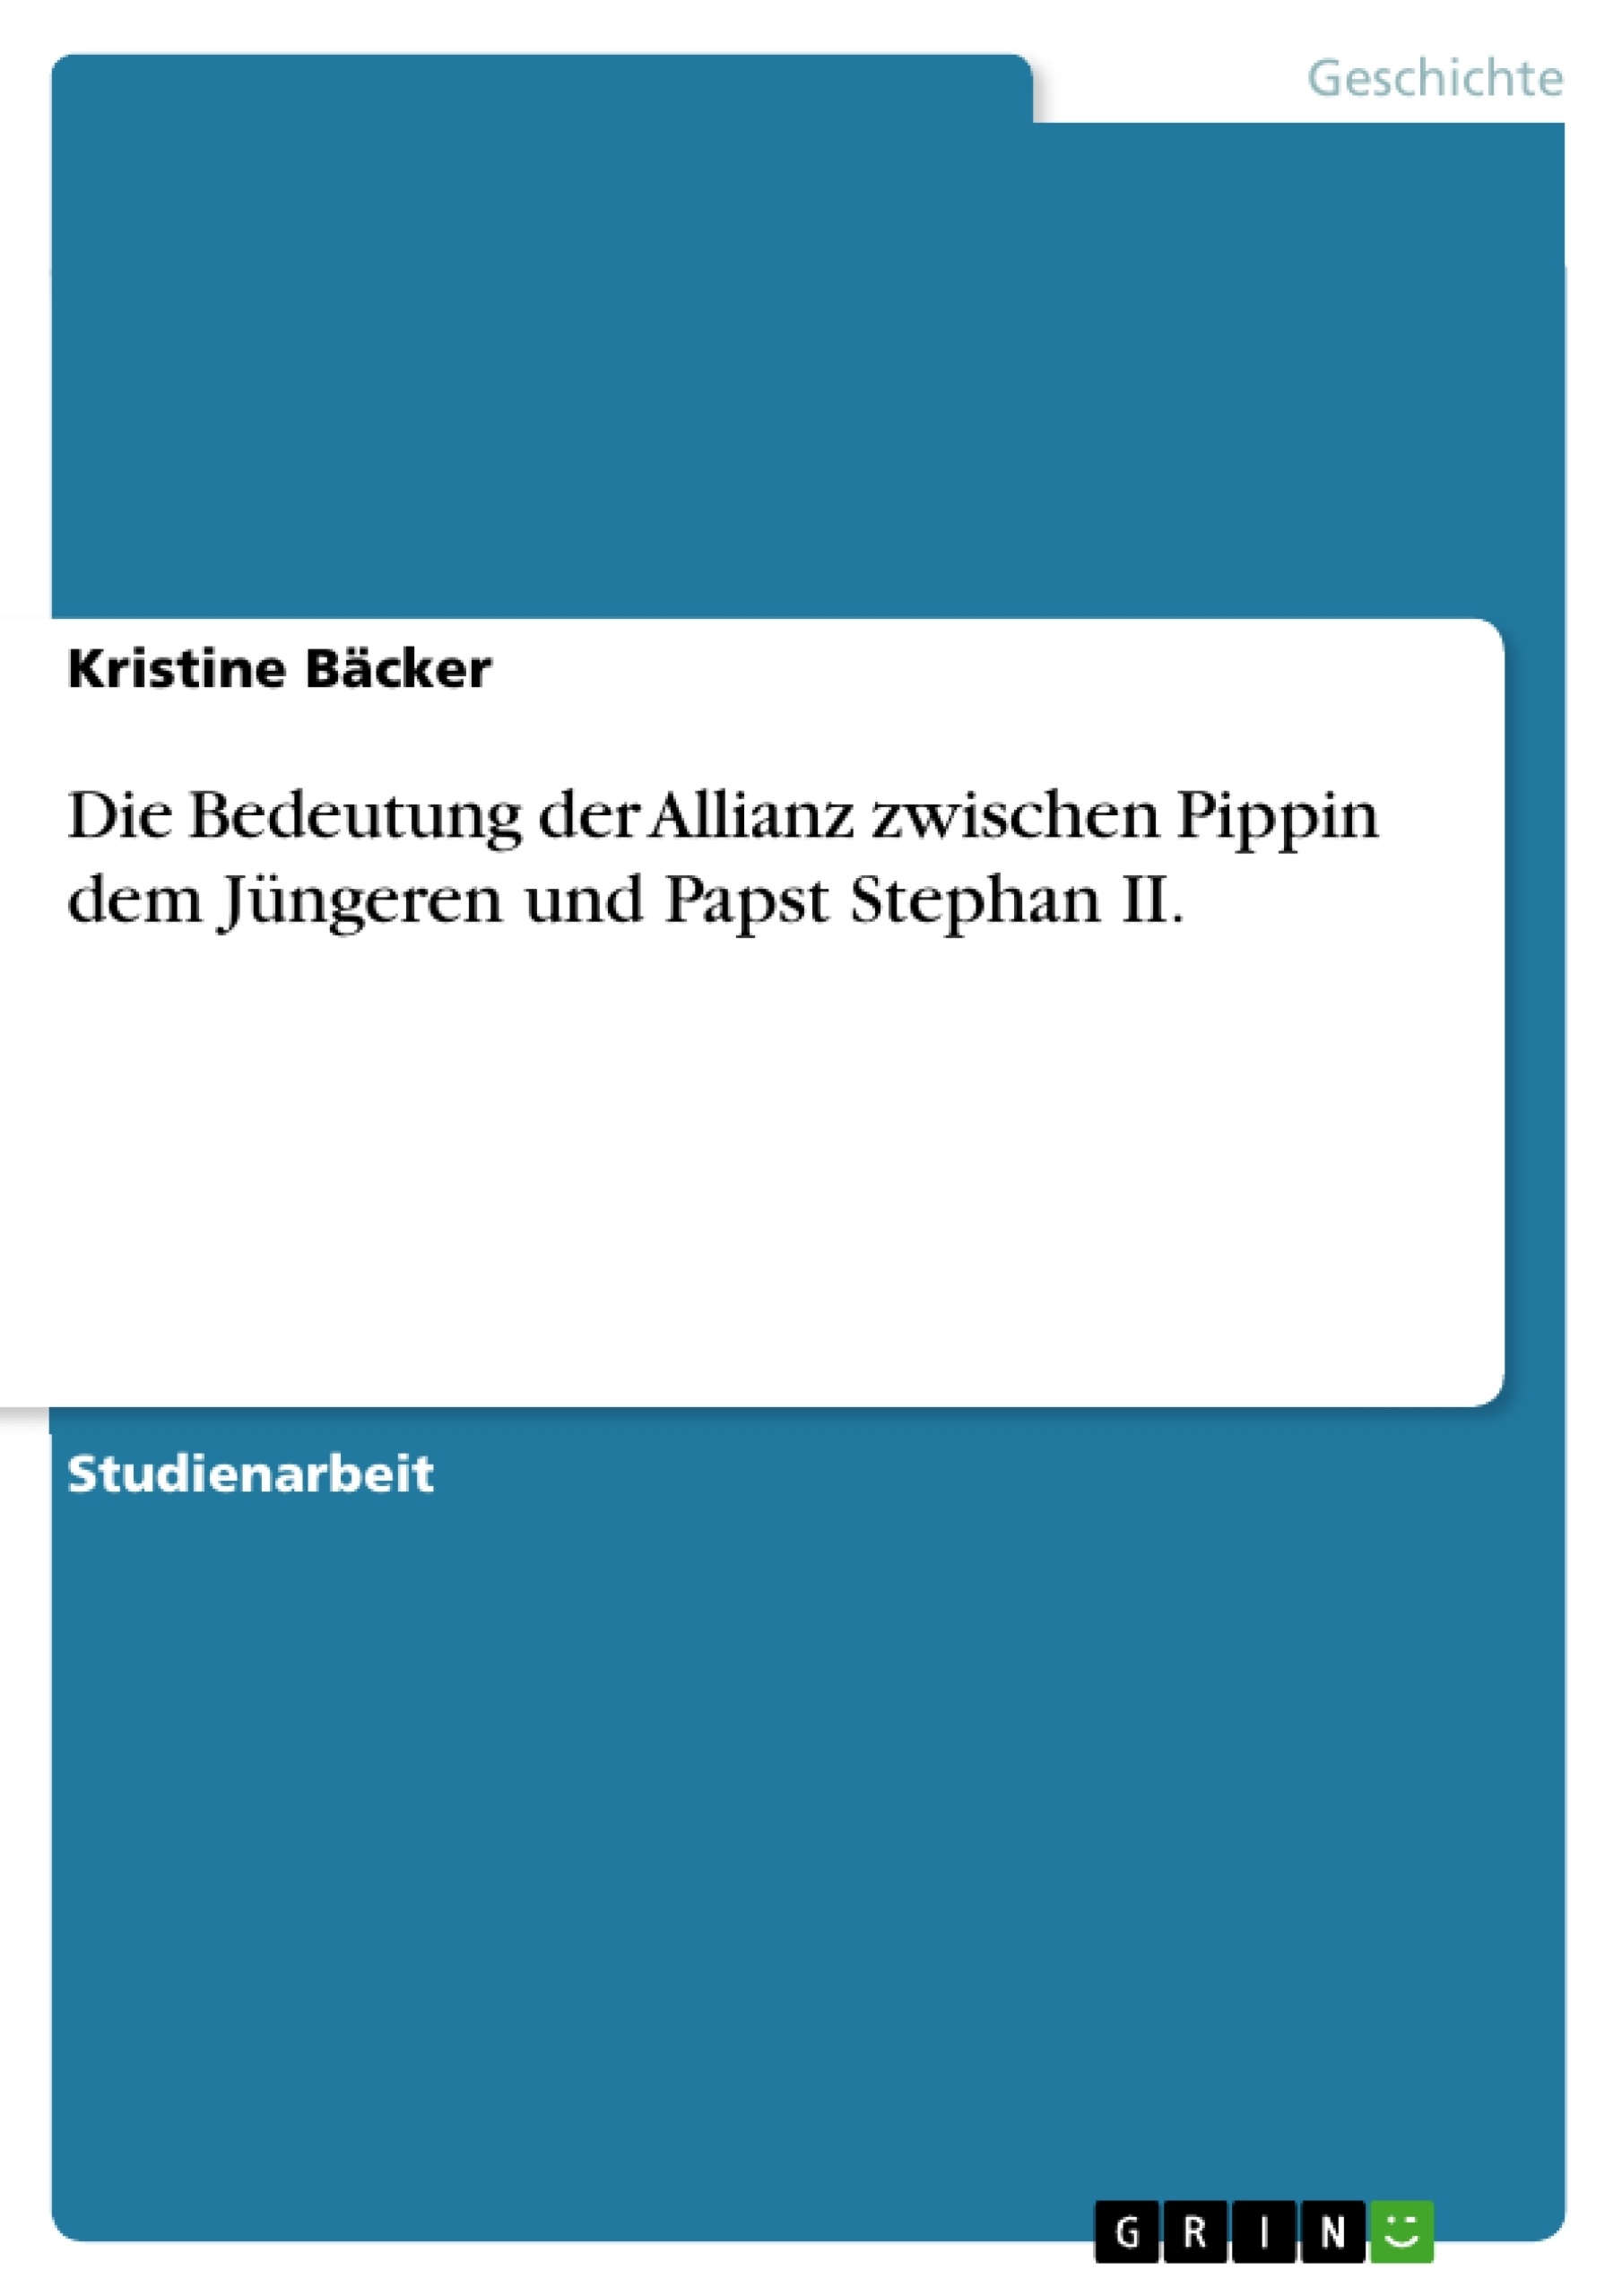 Title: Die Bedeutung der Allianz zwischen Pippin dem Jüngeren und Papst Stephan II.